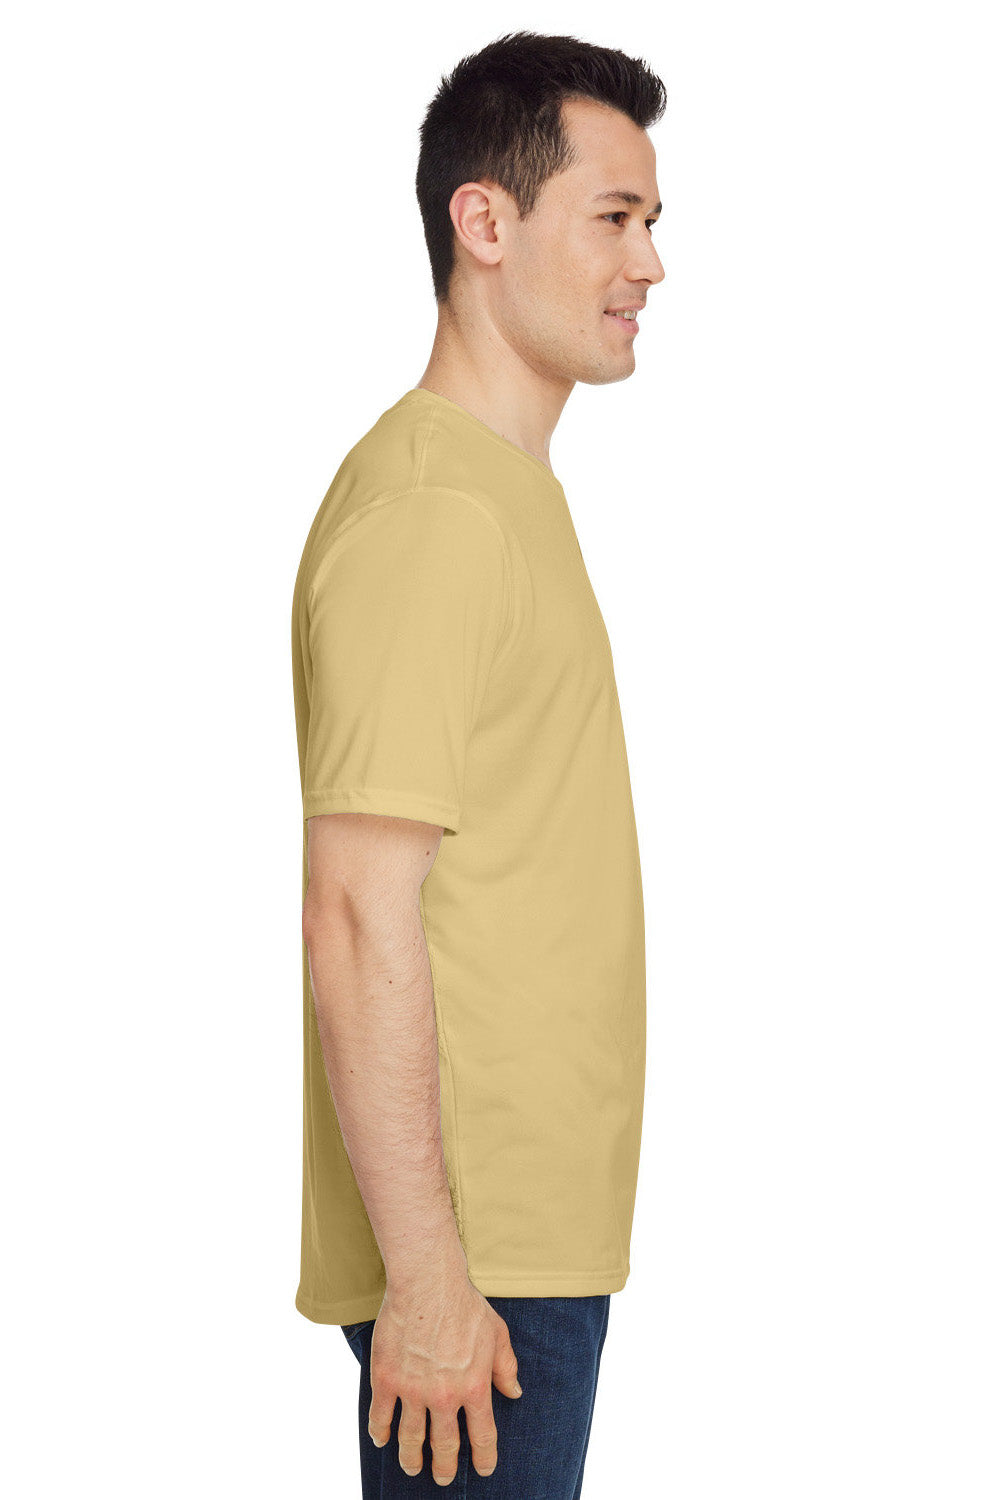 Under Armour 1376842 Mens Team Tech Moisture Wicking Short Sleeve Crewneck T-Shirt Vegas Gold Model Side